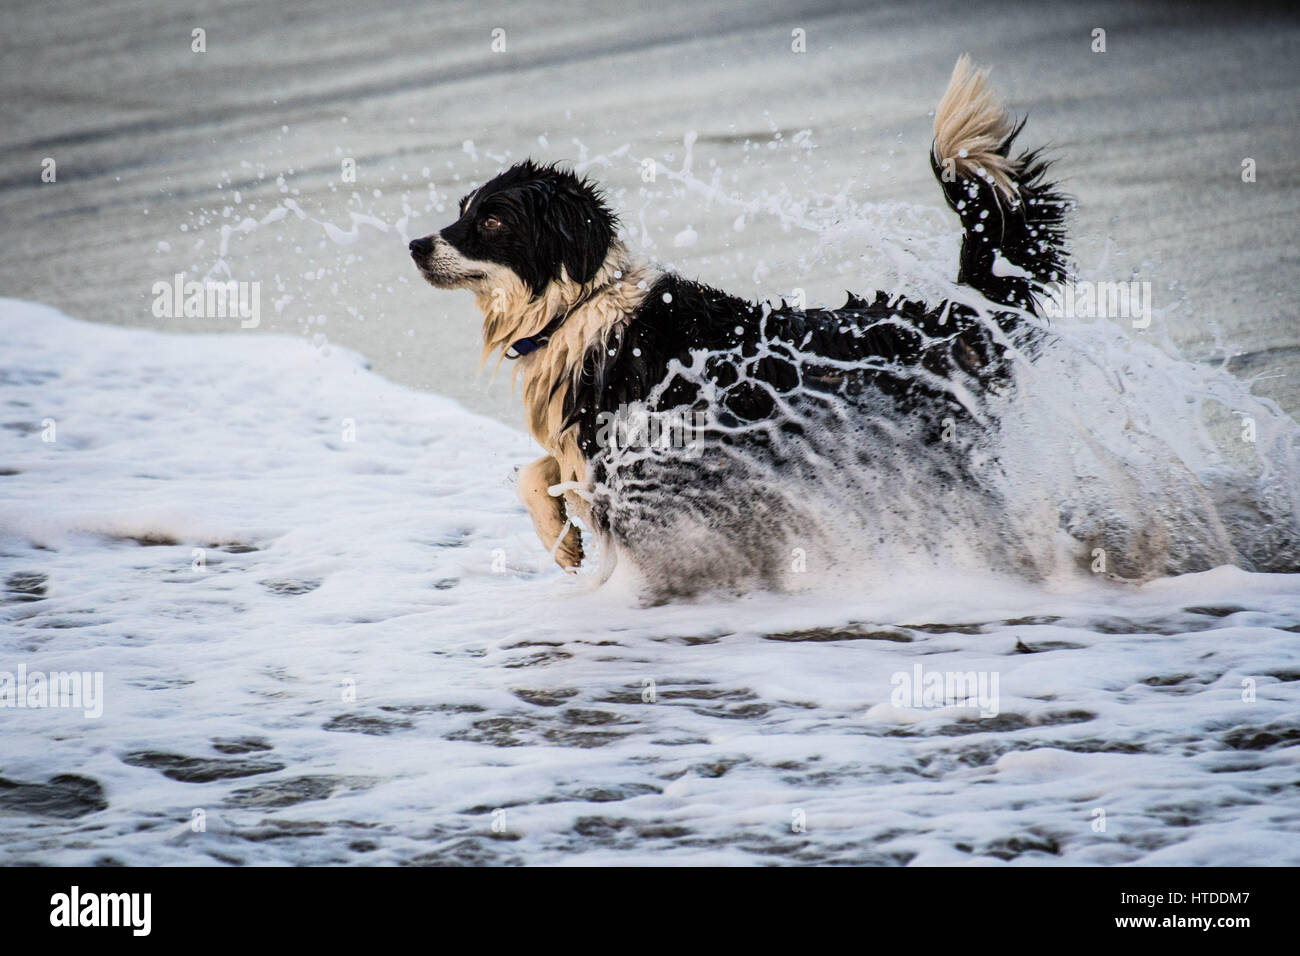 Aberystwyth Wales UK, Freitag, 10. März 2017 UK Wetter: ein Junge verspielte Collie Hund genießt in den Wellen tummeln, auf einem milden aber über Besetzung Abend in Aberystwyth an der Westküste von Wales.   Bildnachweis: Keith Morris / Alamy Live News Stockfoto